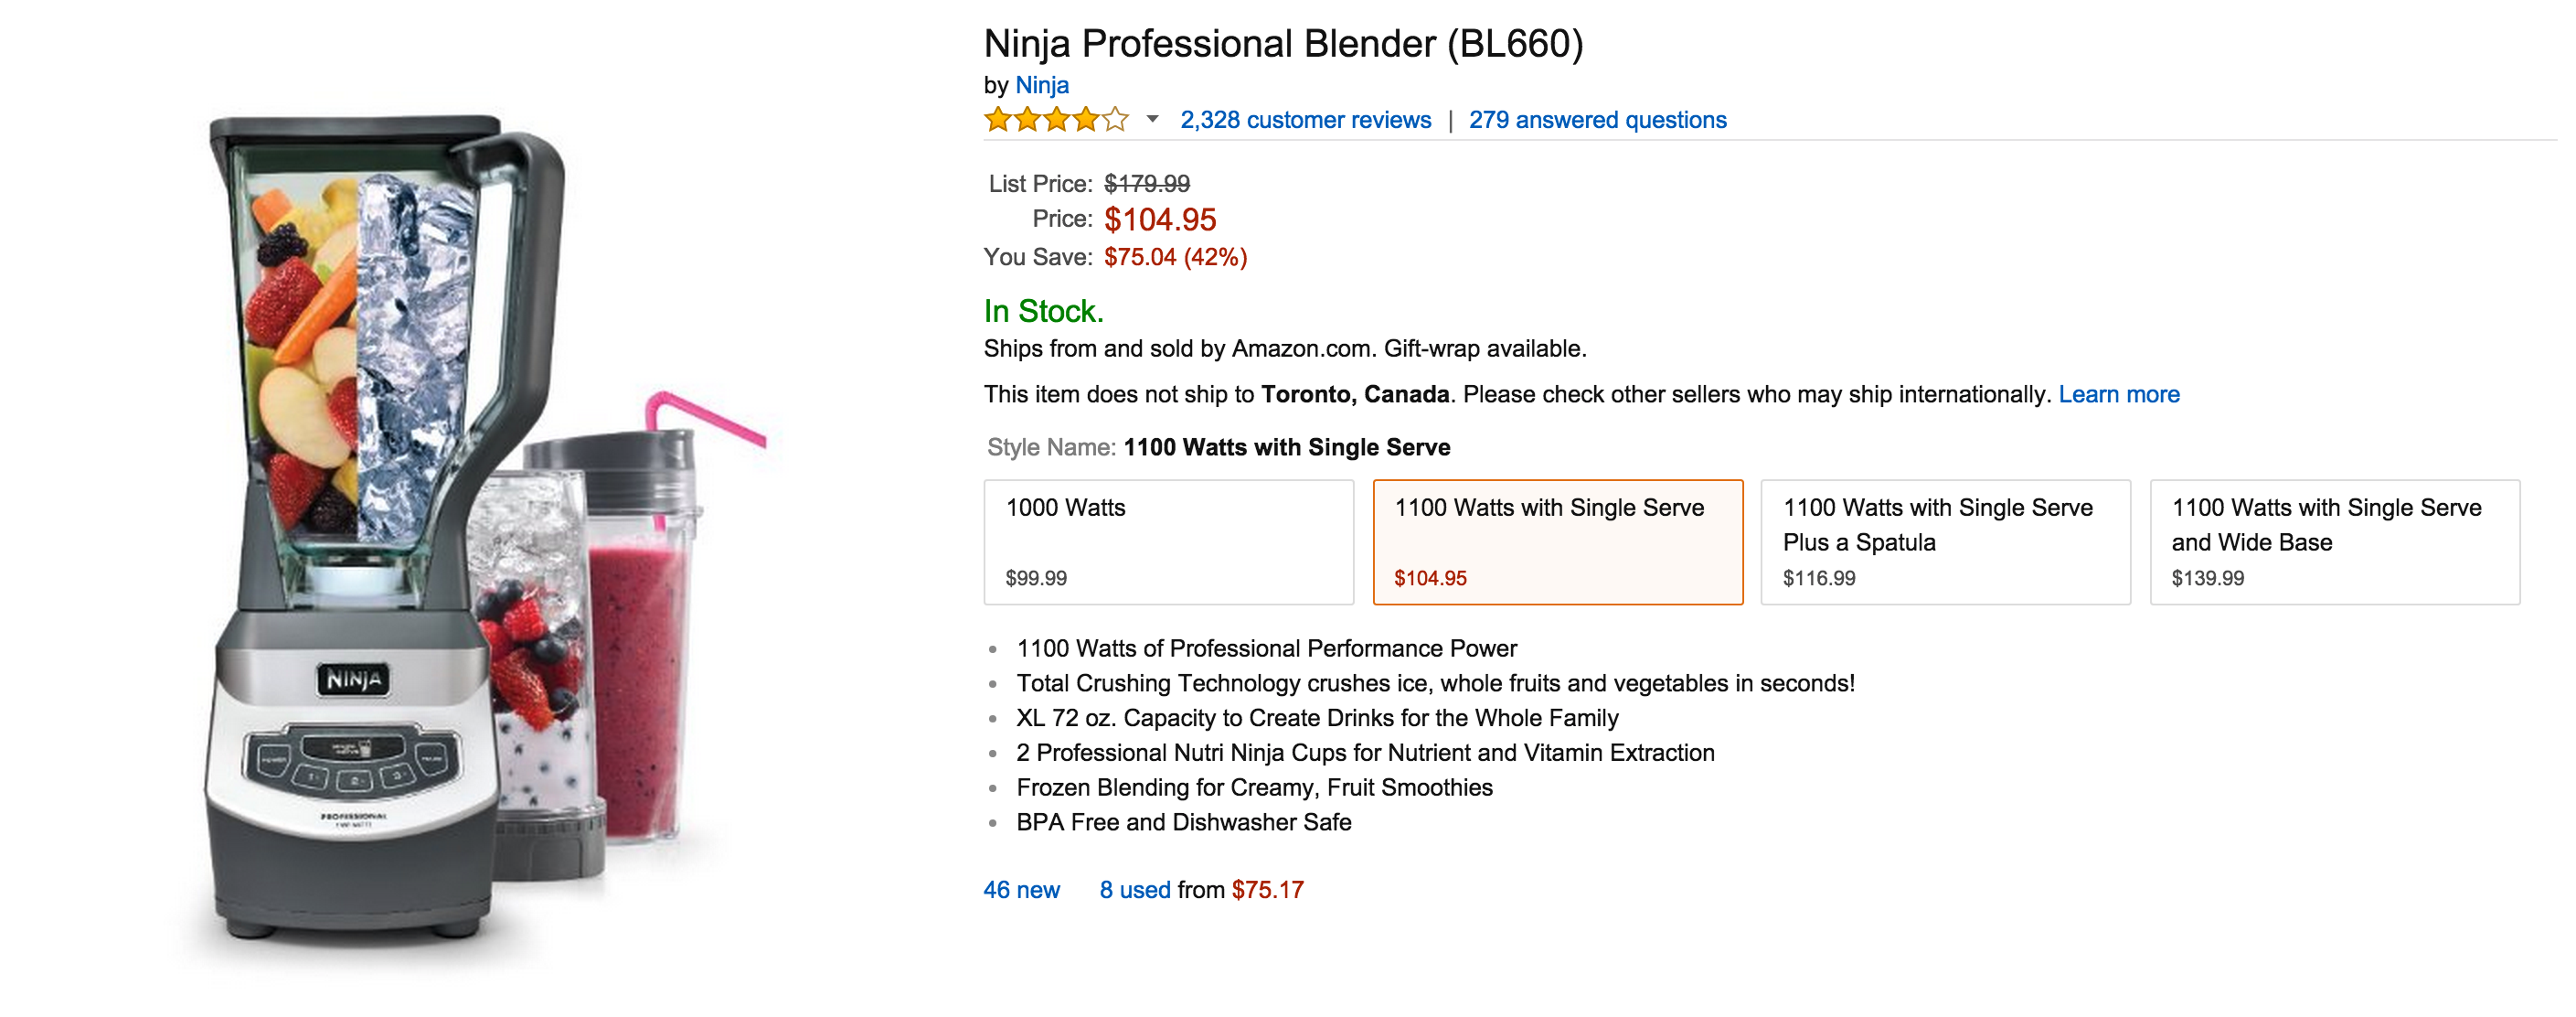 Ninja BL660 2.25 Quart 1100 Watt Professional Blender with Nutri Ninja Cup  - Black